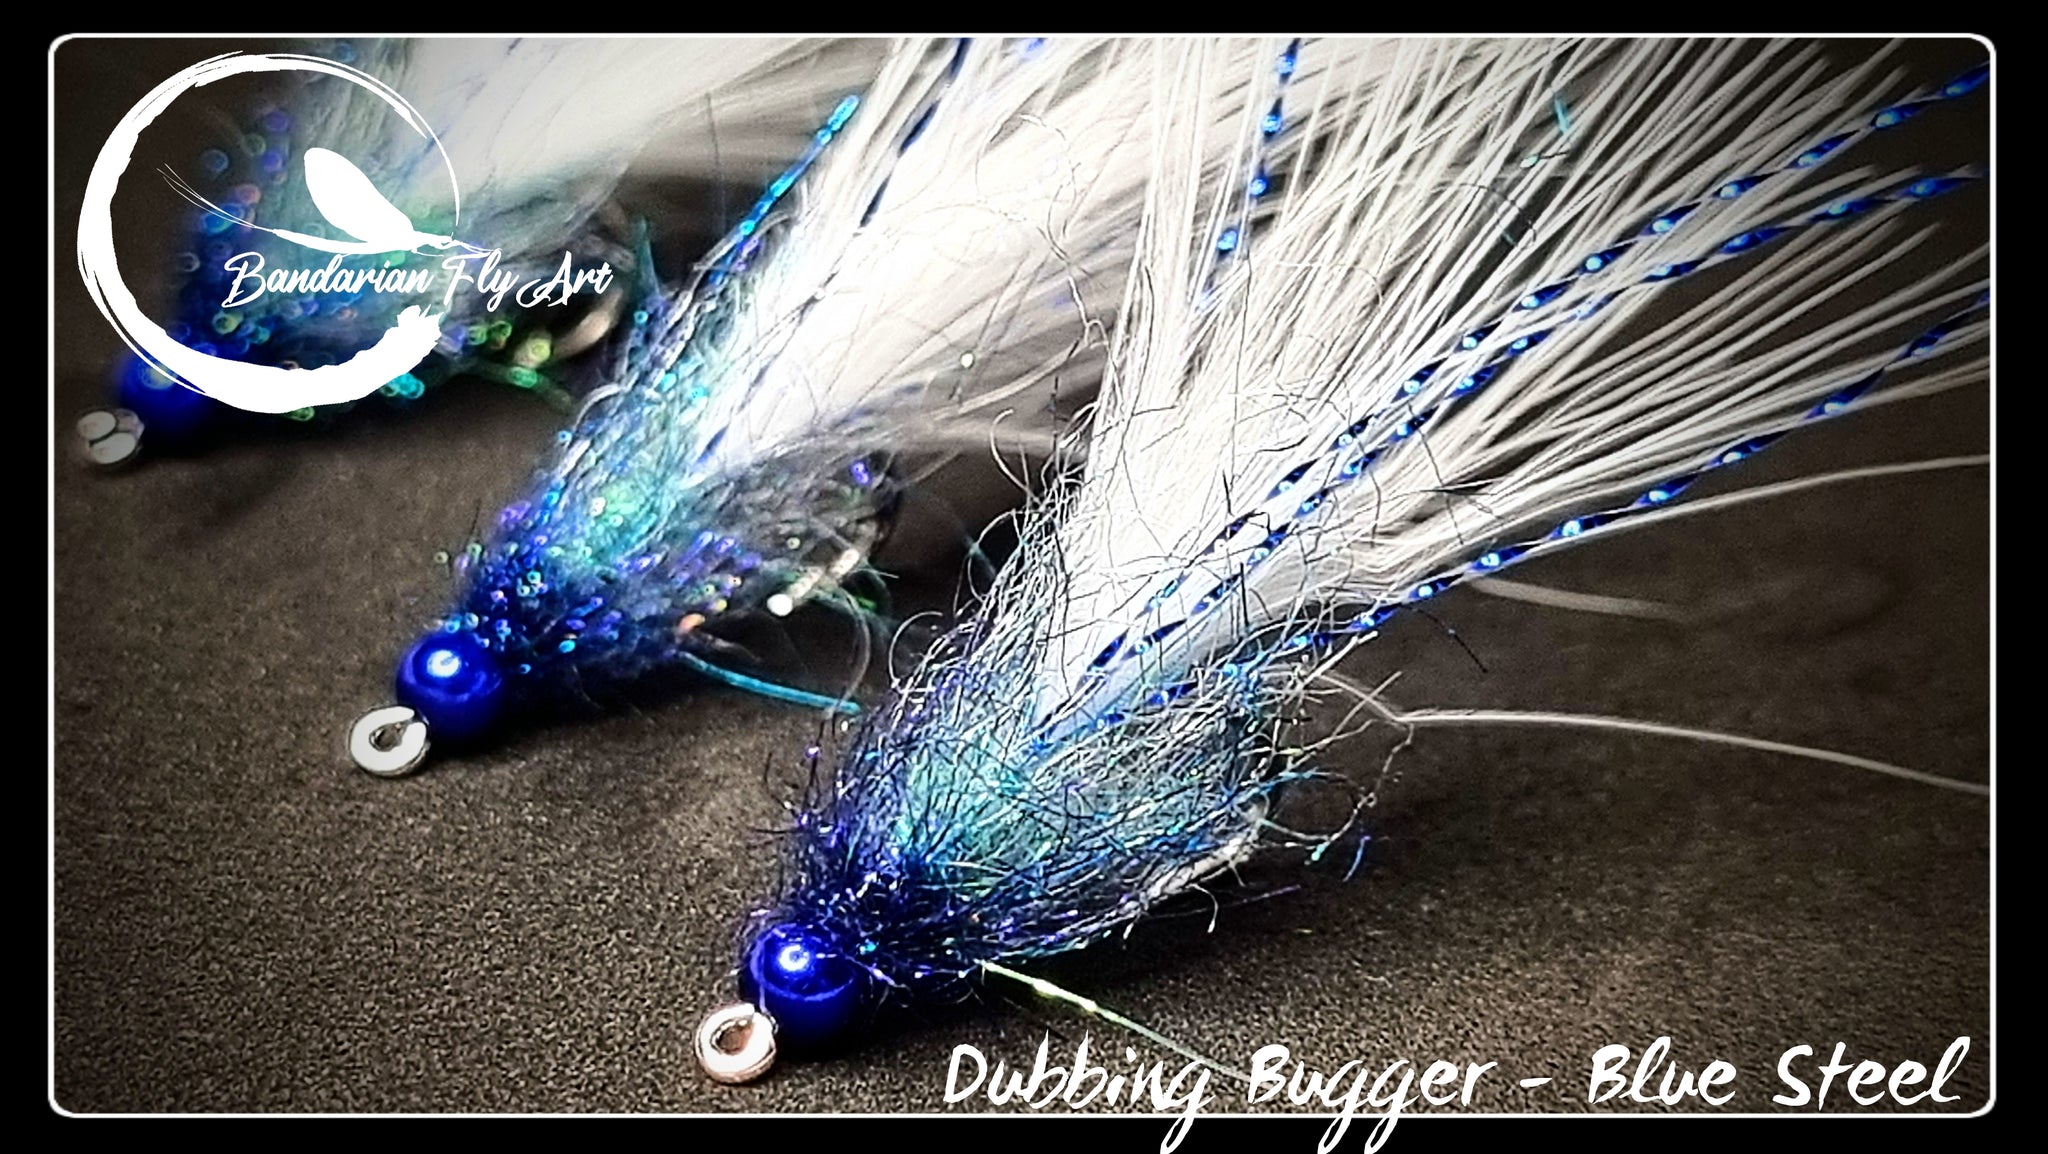 Dubbing bugger - Blue Steel